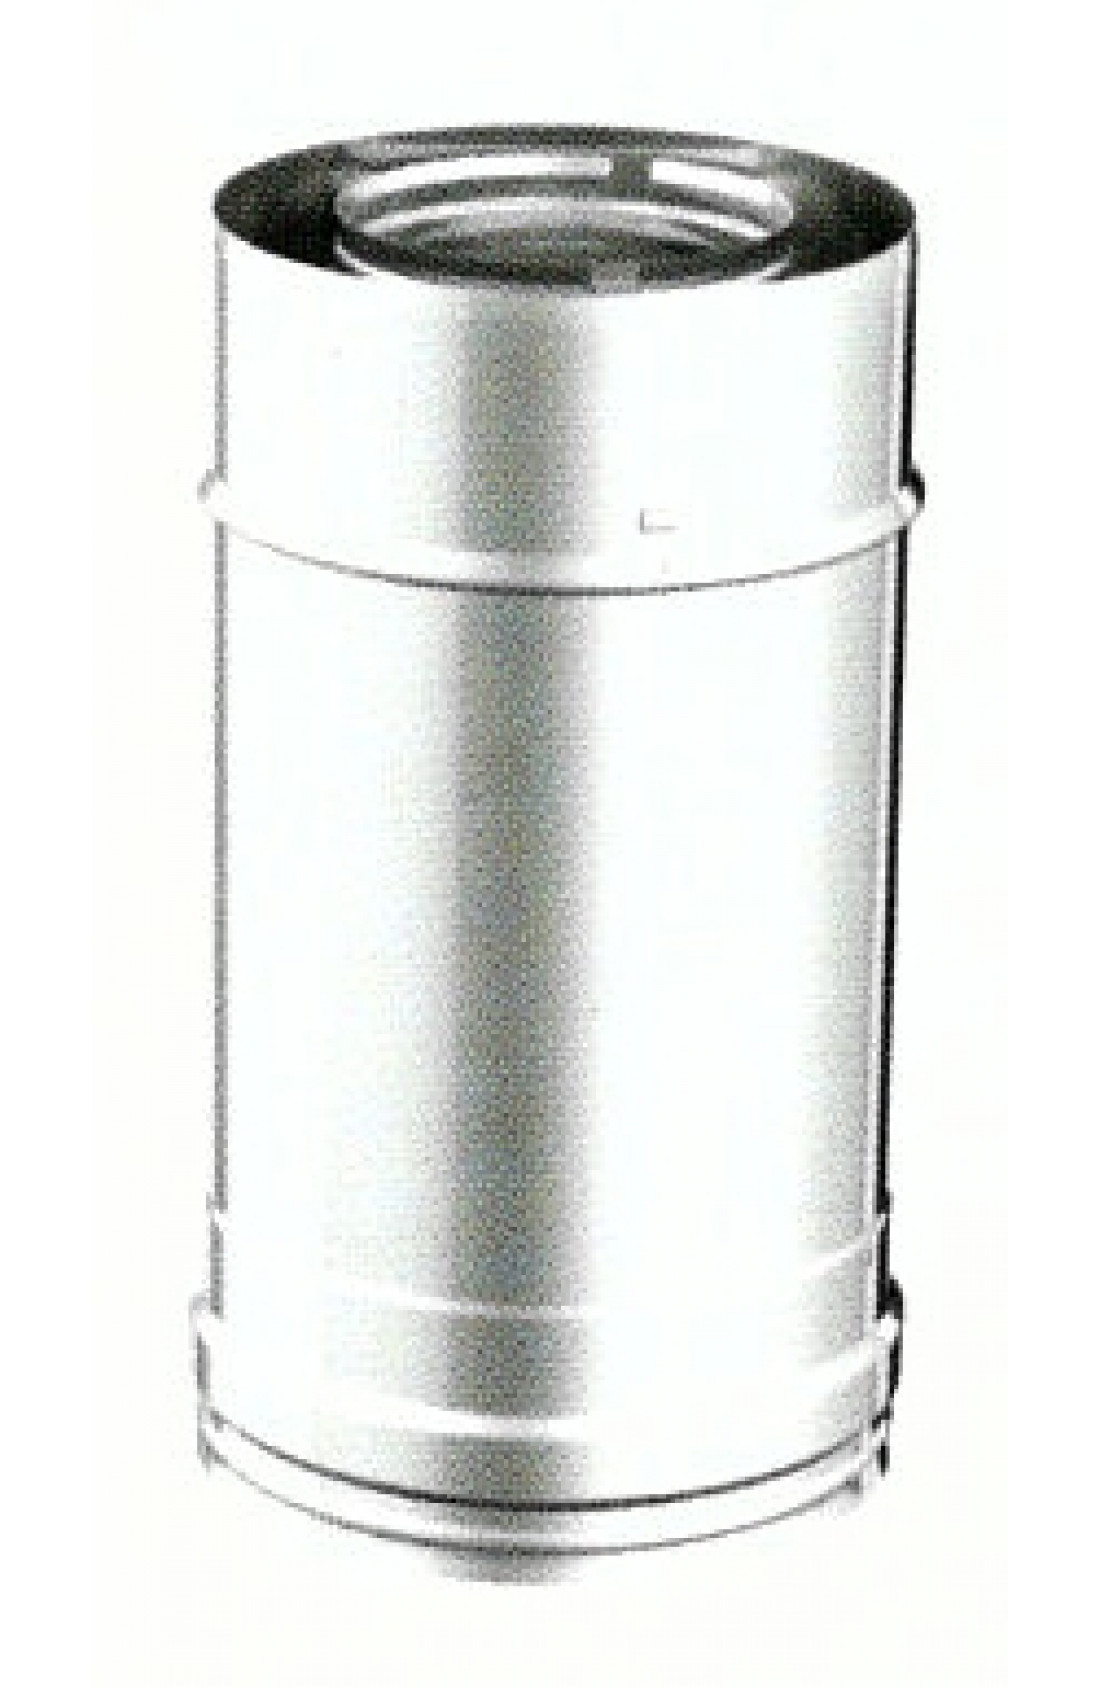 DPG140250 - Tubo in acciaio inox doppia parete coibentato L 250mm